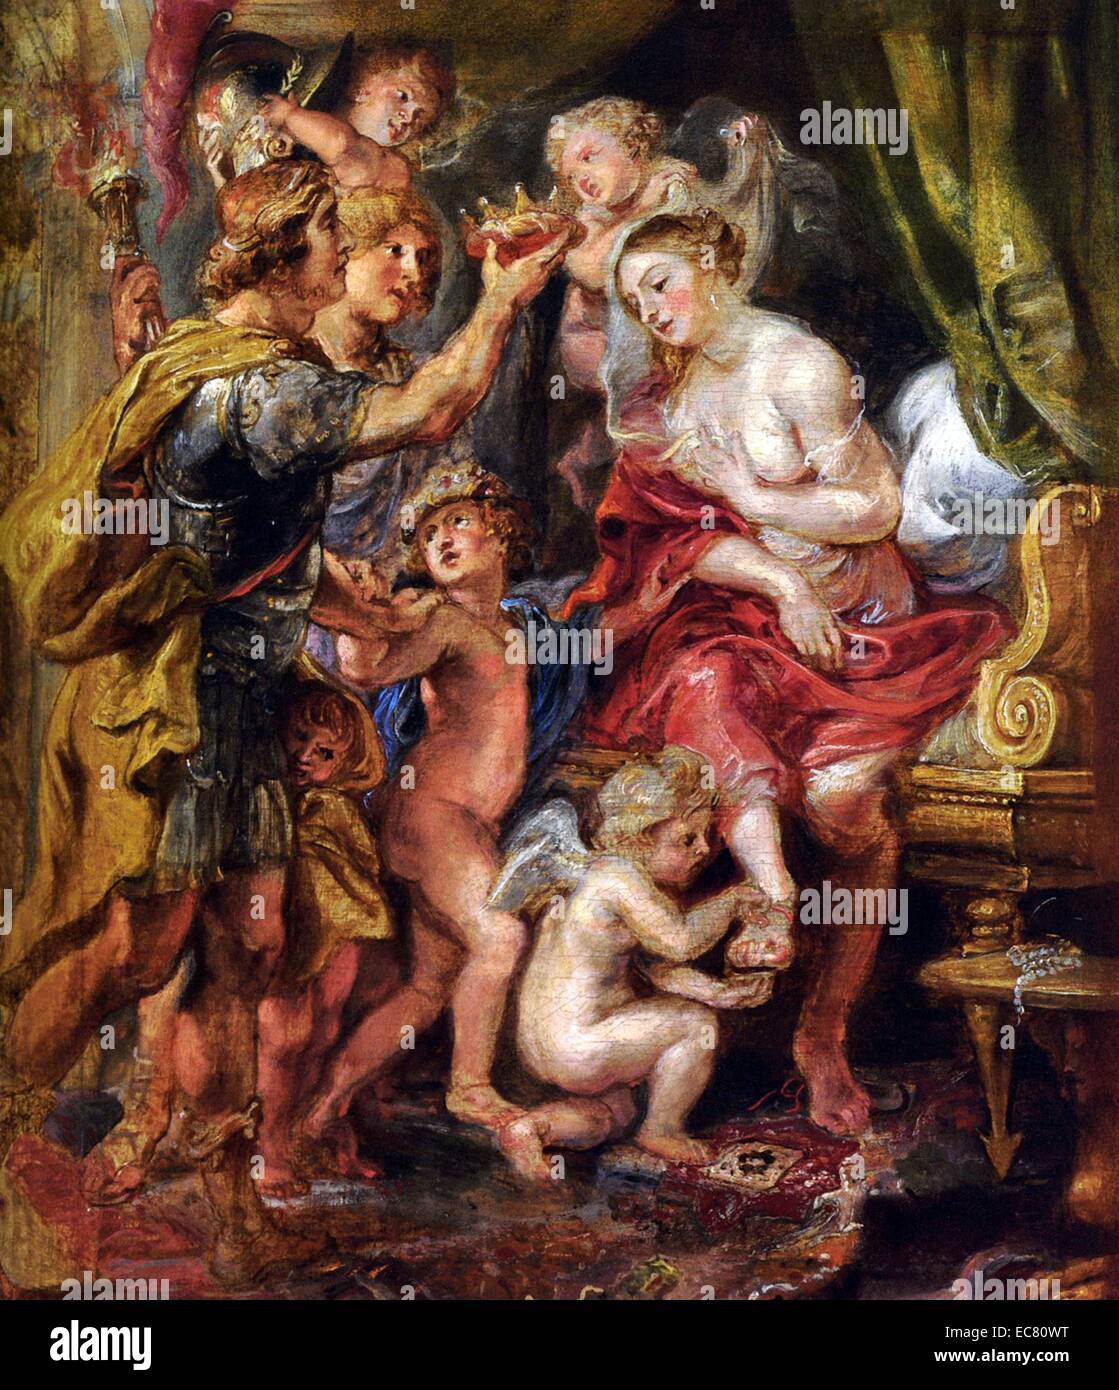 Alexander y Roxana de Peter Paul Rubens. Rubens (1577 -1640), fue un pintor barroco flamenco, y partidario de una extravagante estilo barroco que hizo hincapié en el movimiento, color y sensualidad. Foto de stock